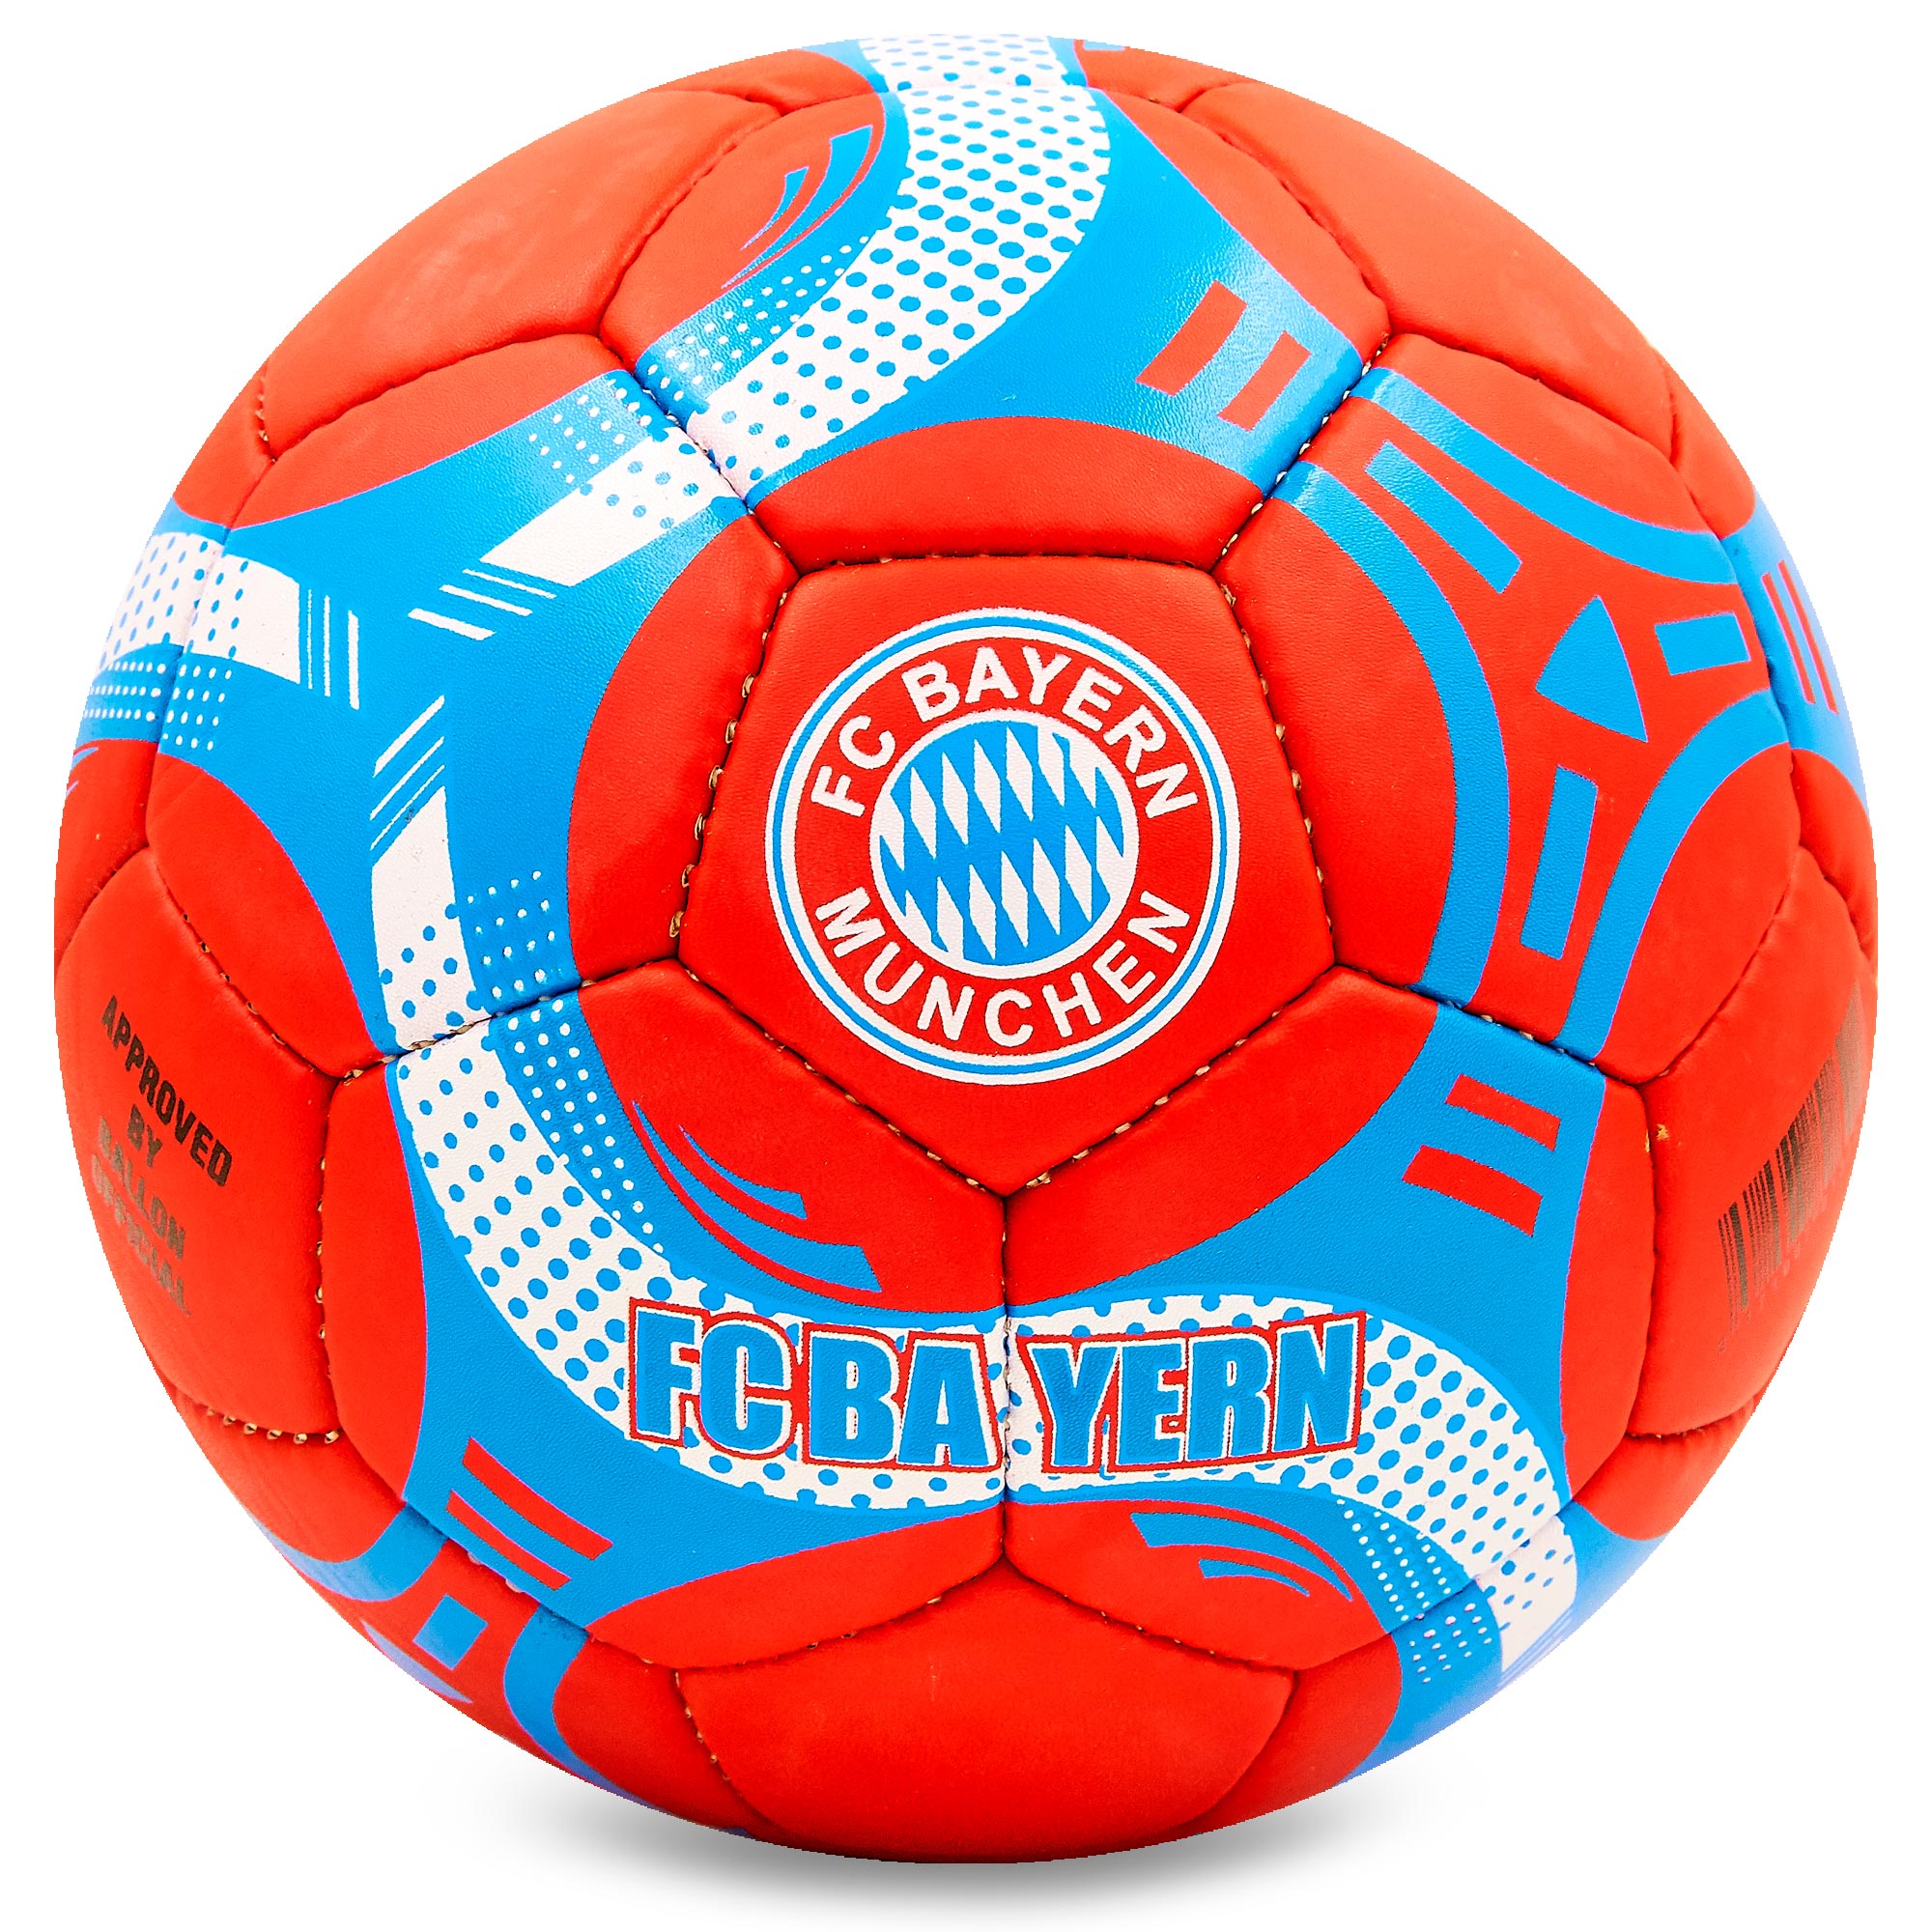 М'яч футбольний planeta-sport №5 Грипі BAYERN MUNCHEN (FB-6692)